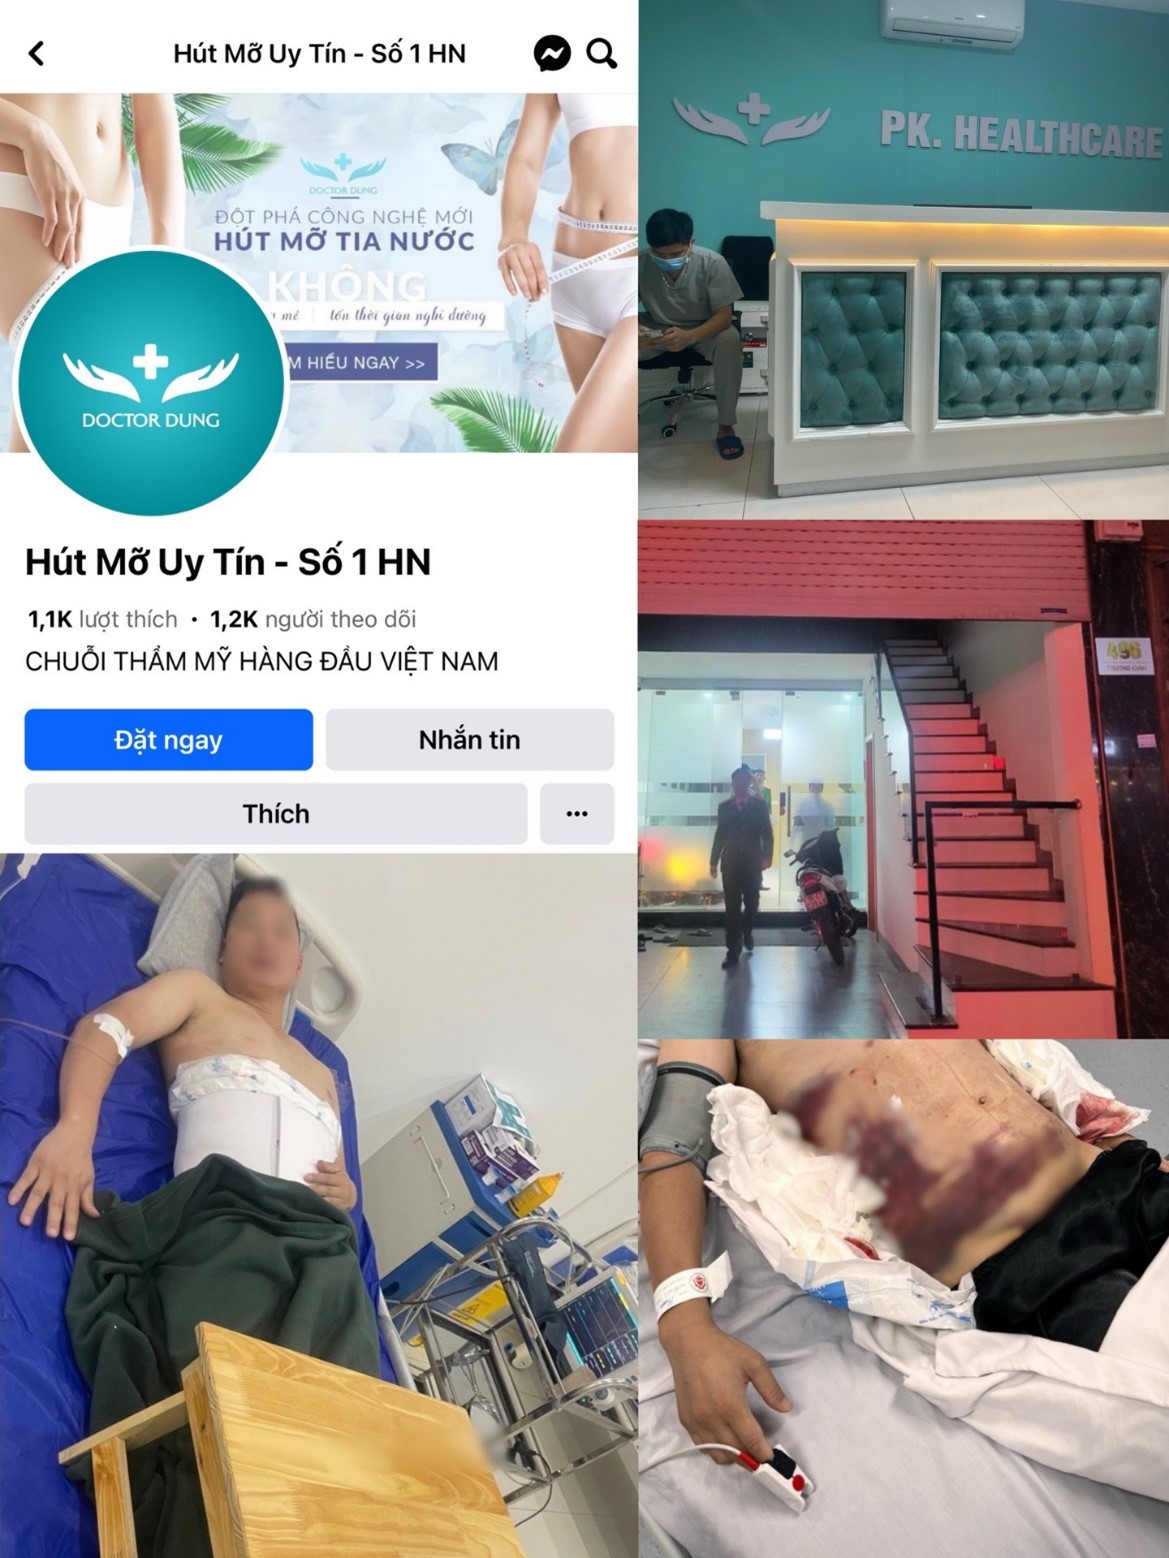 Xã hội - Hà Nội: Người đàn ông nhập viện trong tình trạng nguy kịch do hút mỡ bụng tại một cơ sở không phép